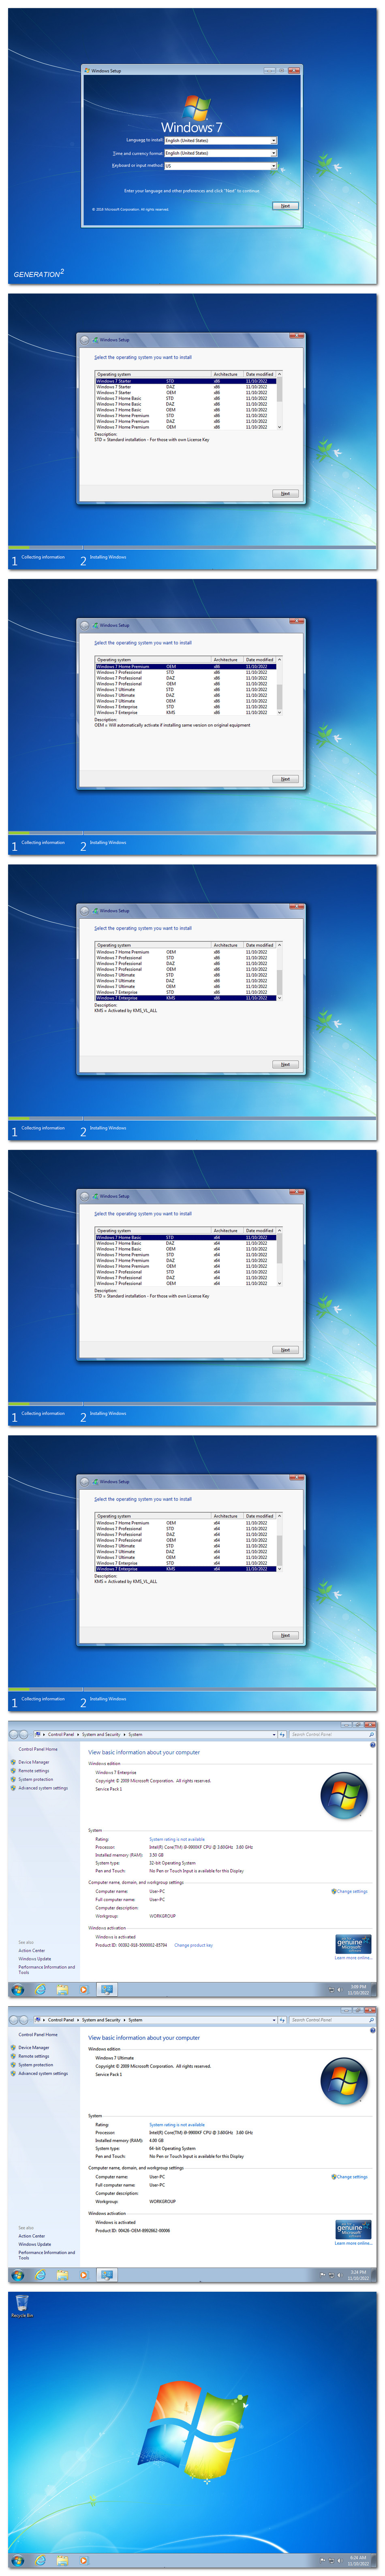 Windows 7 SP1 DUAL BOOT 31in1 OEM ESD en US NOV 2022 Gen2